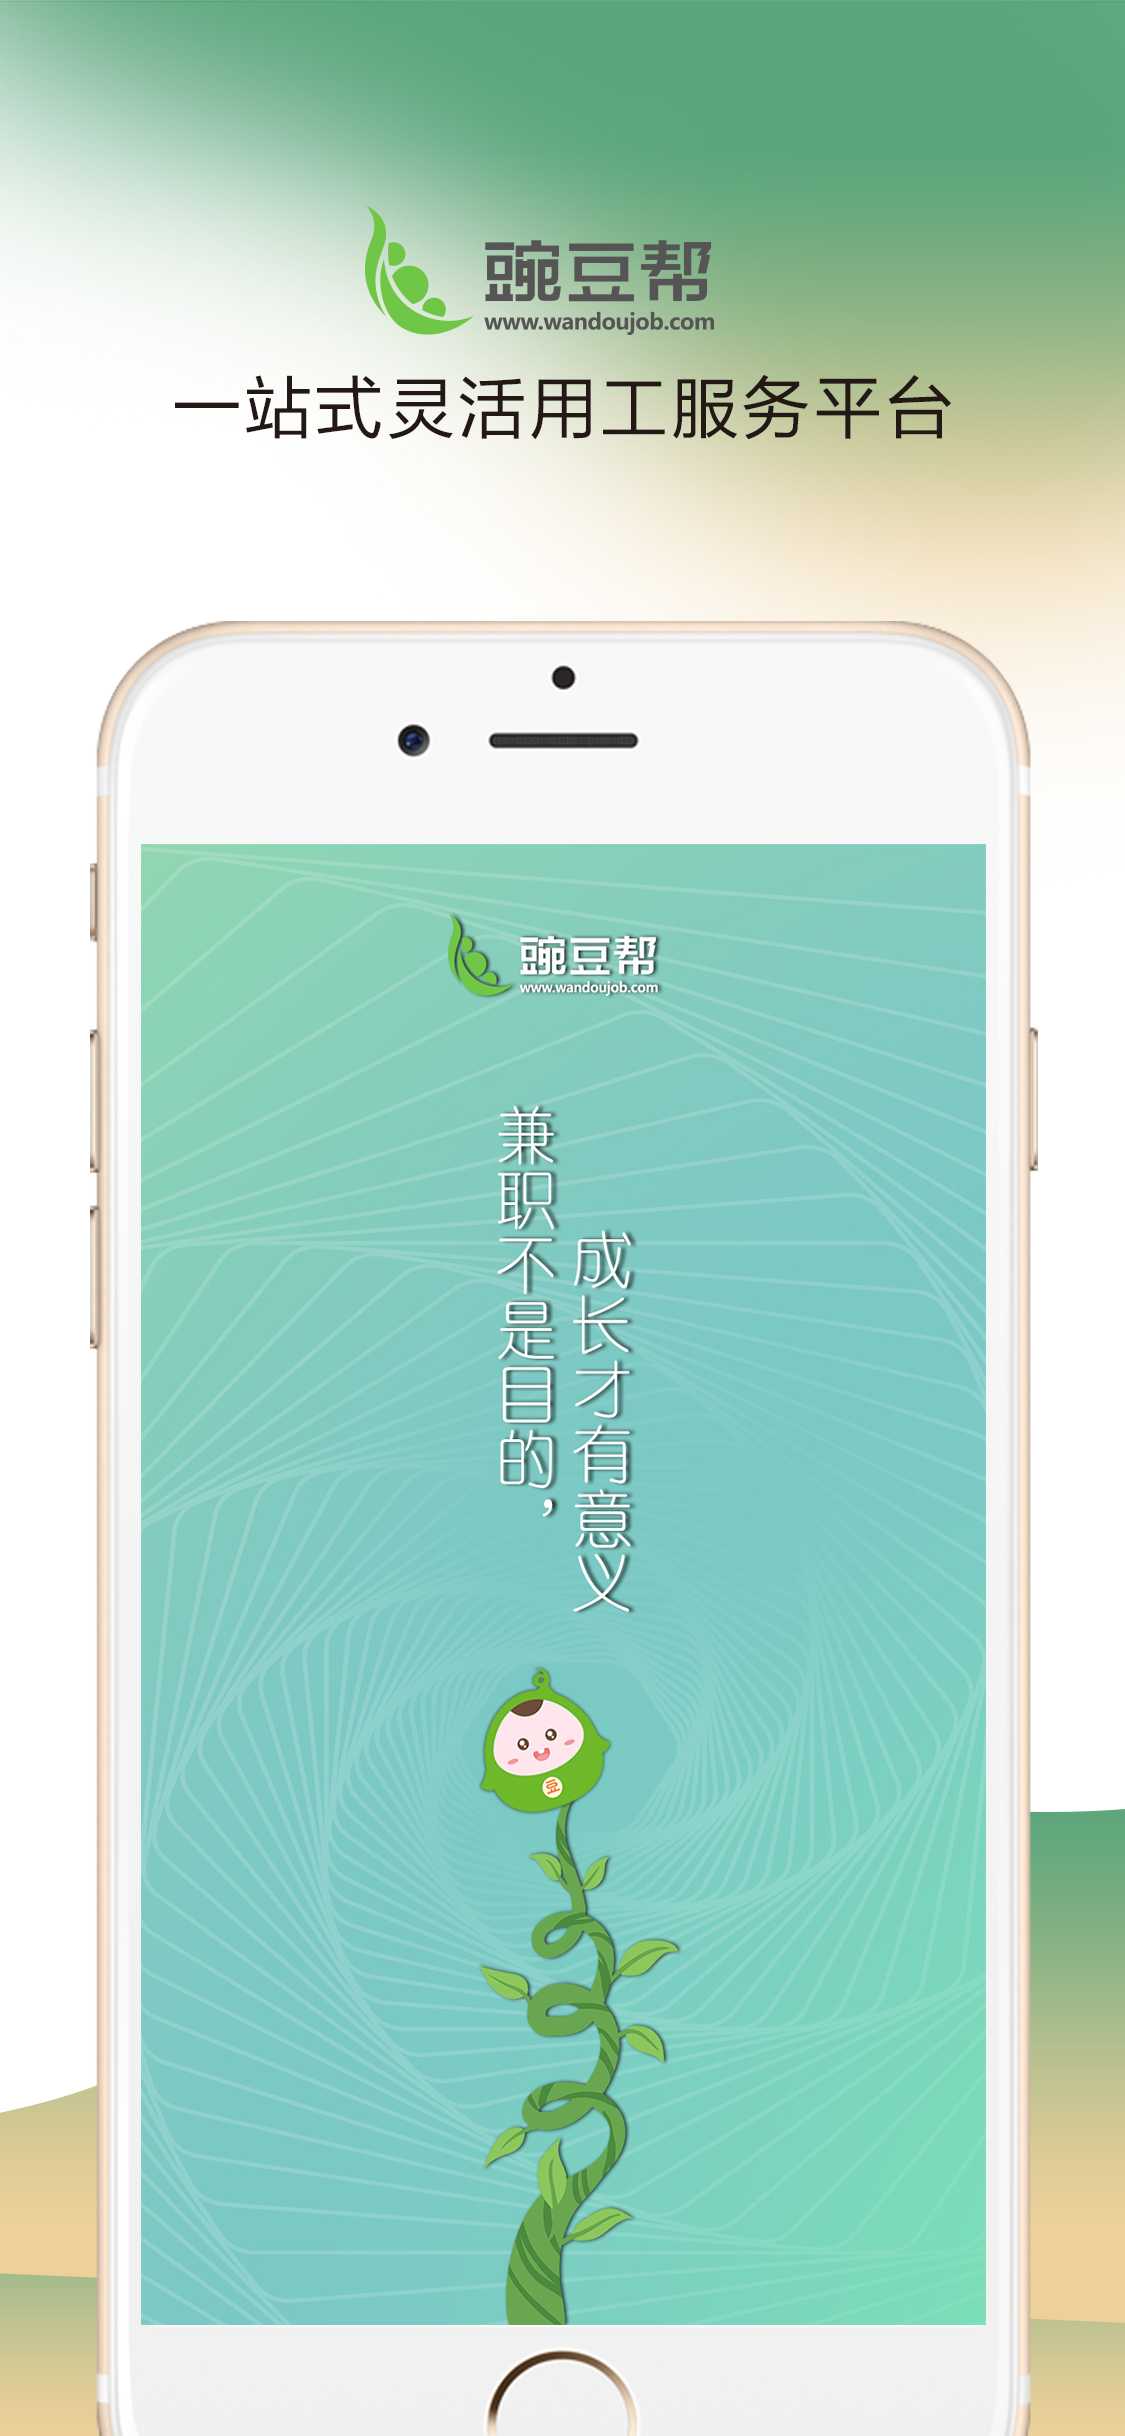 豌豆帮手机软件app截图